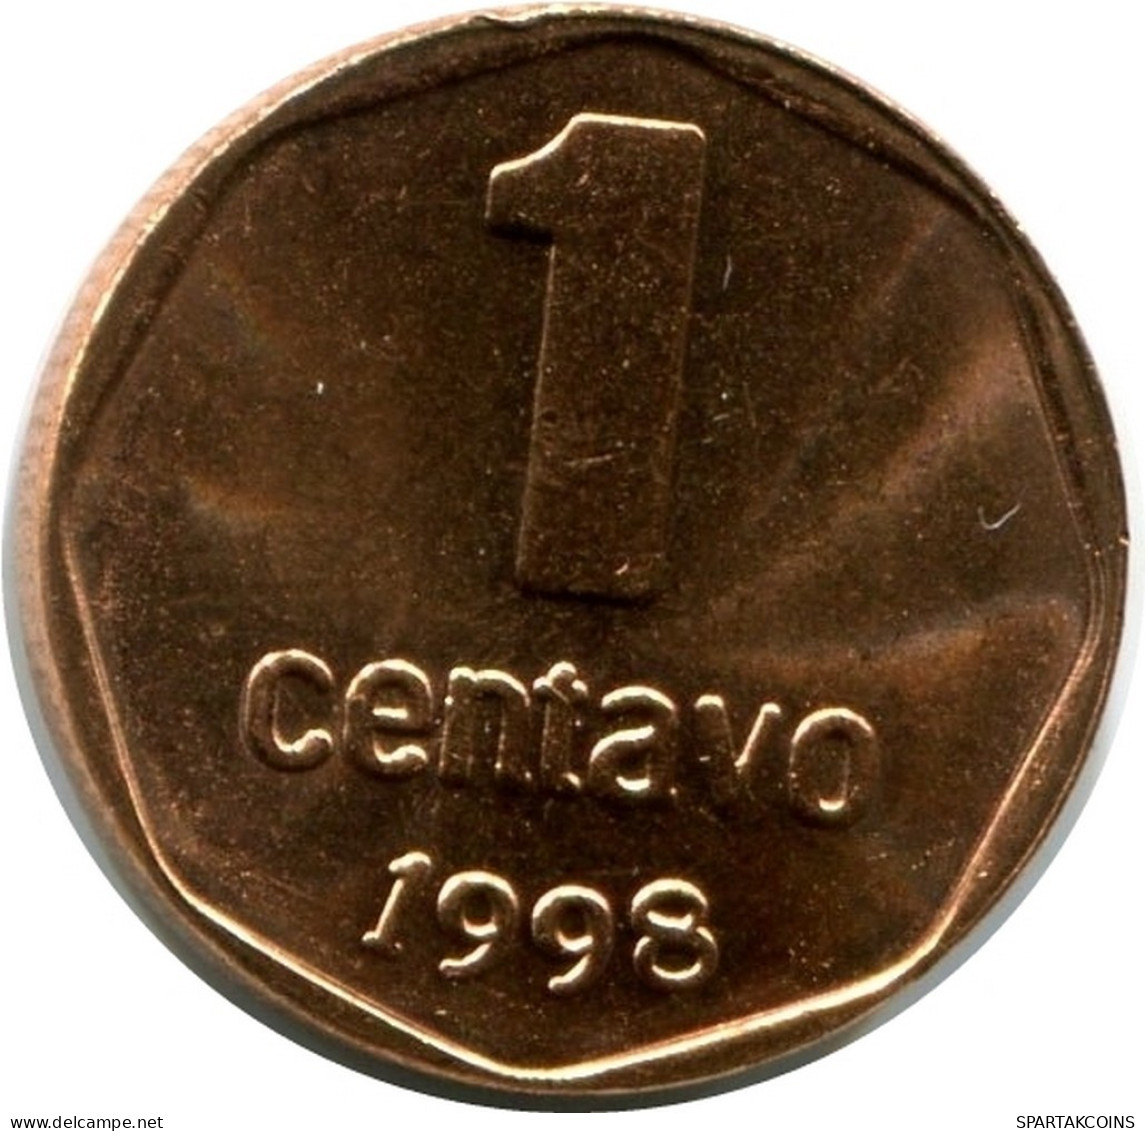 1 CENTAVO 1998 ARGENTINIEN ARGENTINA Münze UNC #M10066.D.A - Argentine